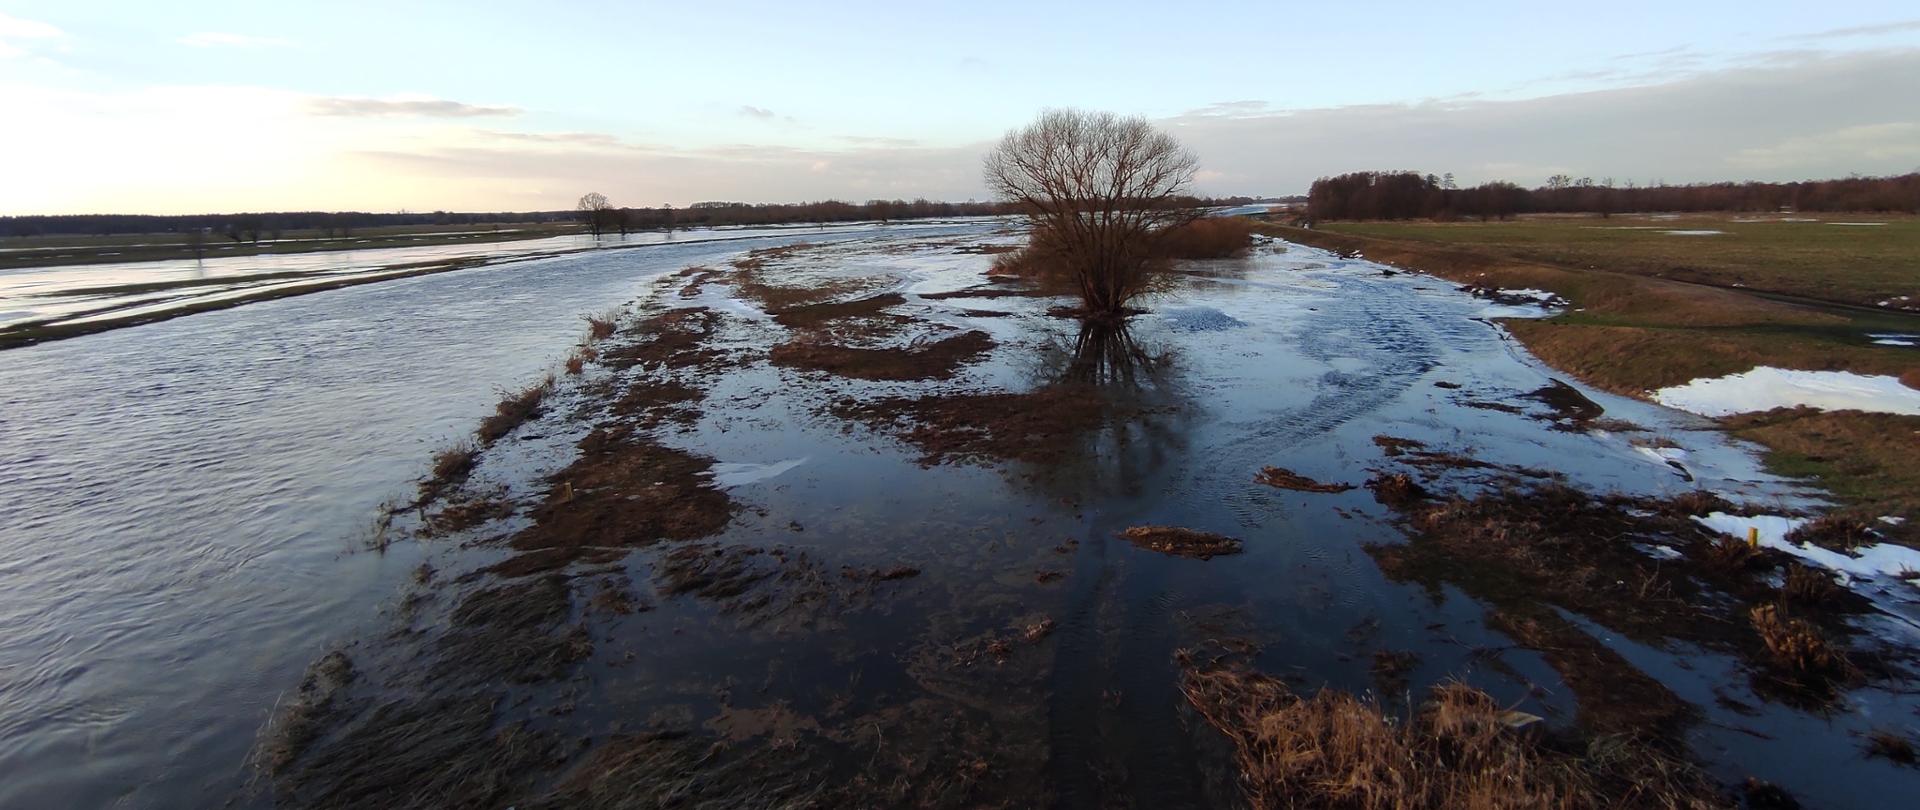 Rozlewisko Noteci w Gościmcu. Widać podtopione drzewo i łąki. Woda układa się w międzywalu. Zdjęcie z drona. Daleki widok w dół rzeki. 